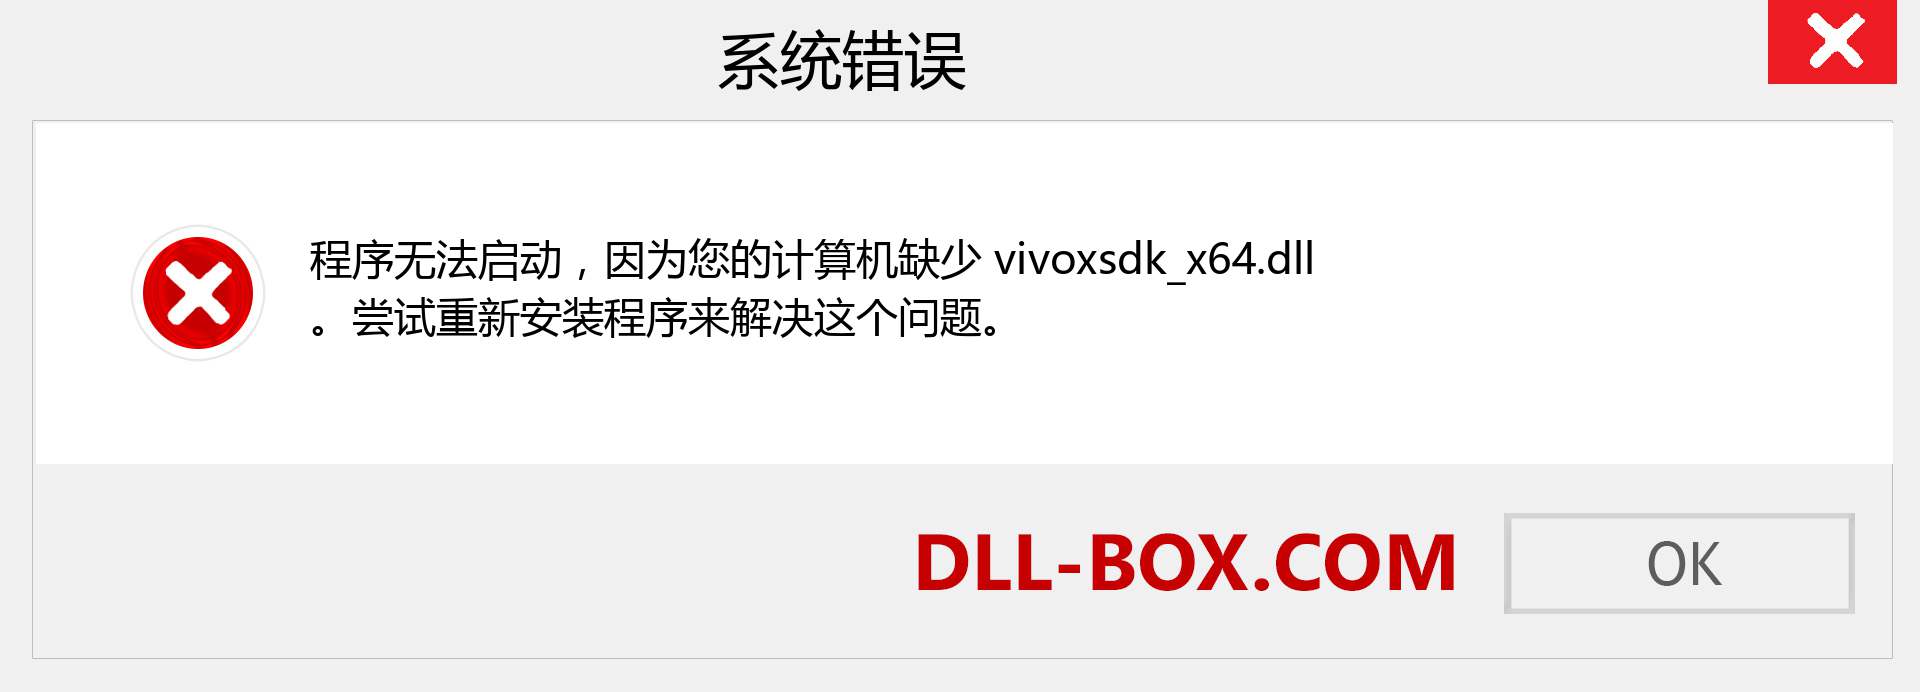 vivoxsdk_x64.dll 文件丢失？。 适用于 Windows 7、8、10 的下载 - 修复 Windows、照片、图像上的 vivoxsdk_x64 dll 丢失错误